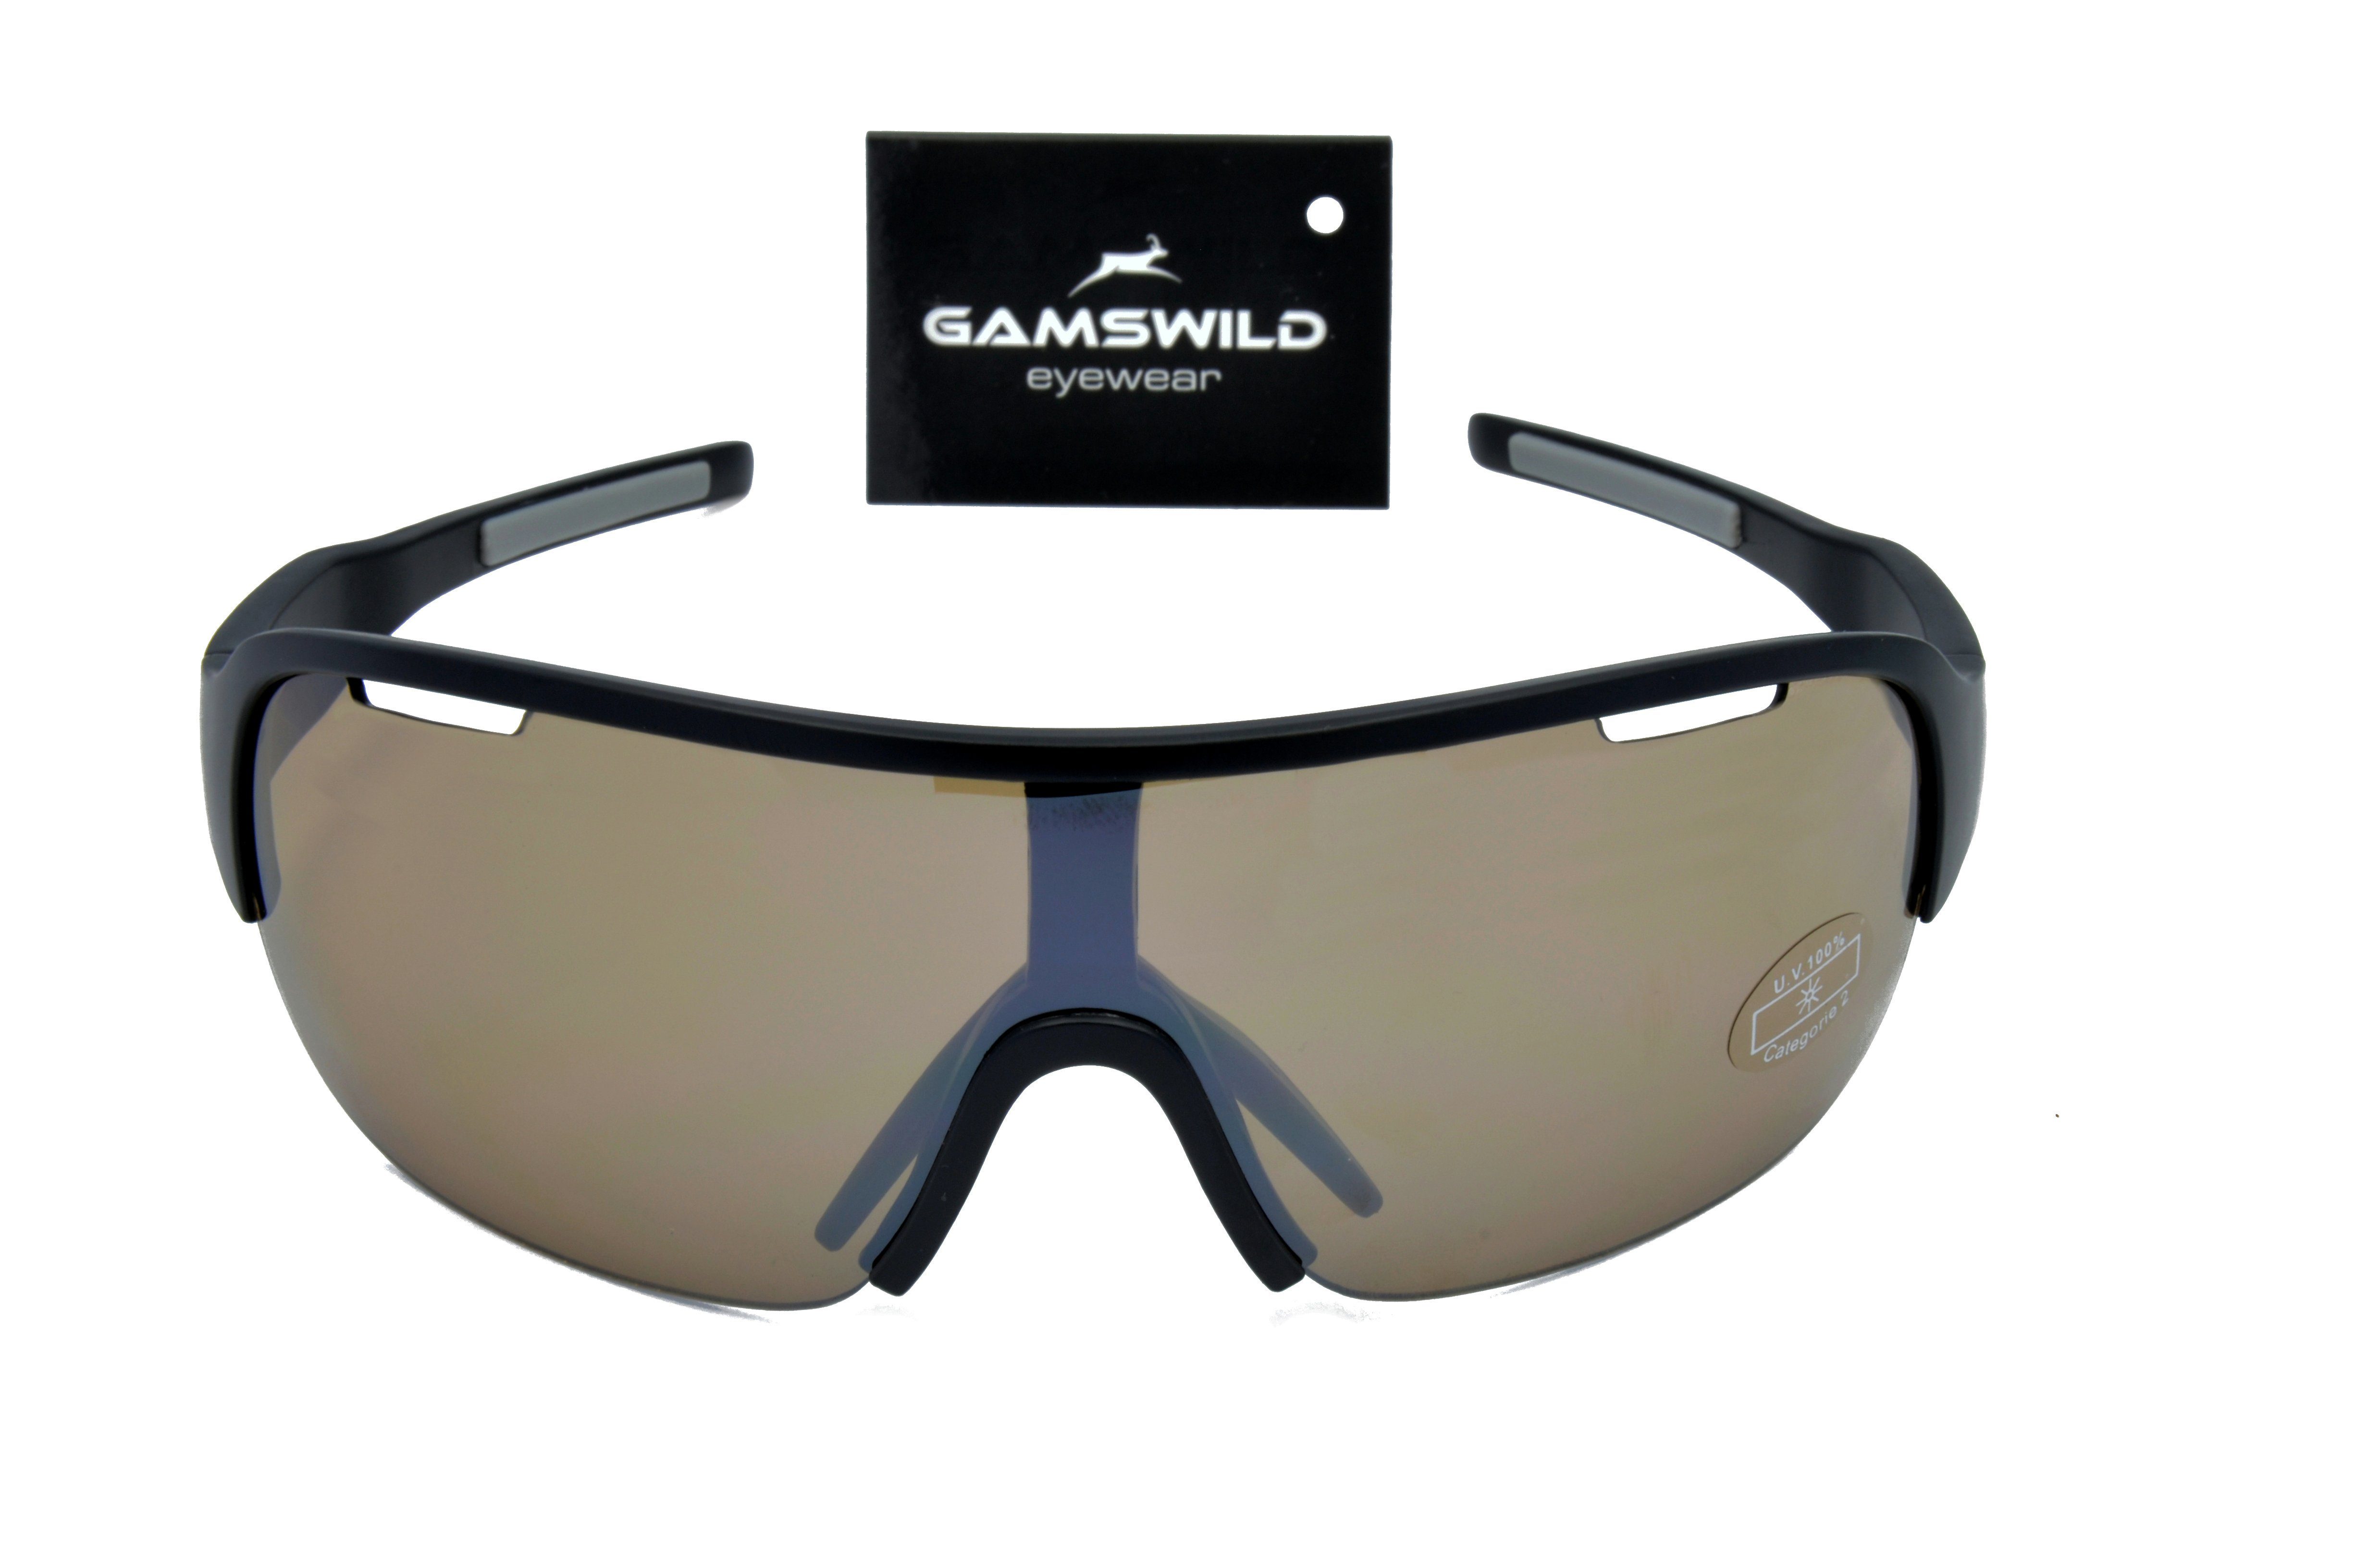 Fahrradbrille weiß, blau, schwarz, Sonnenbrille Herren Skibrille Unisex, Sportbrille TR90 Damen WS8434 Gamswild